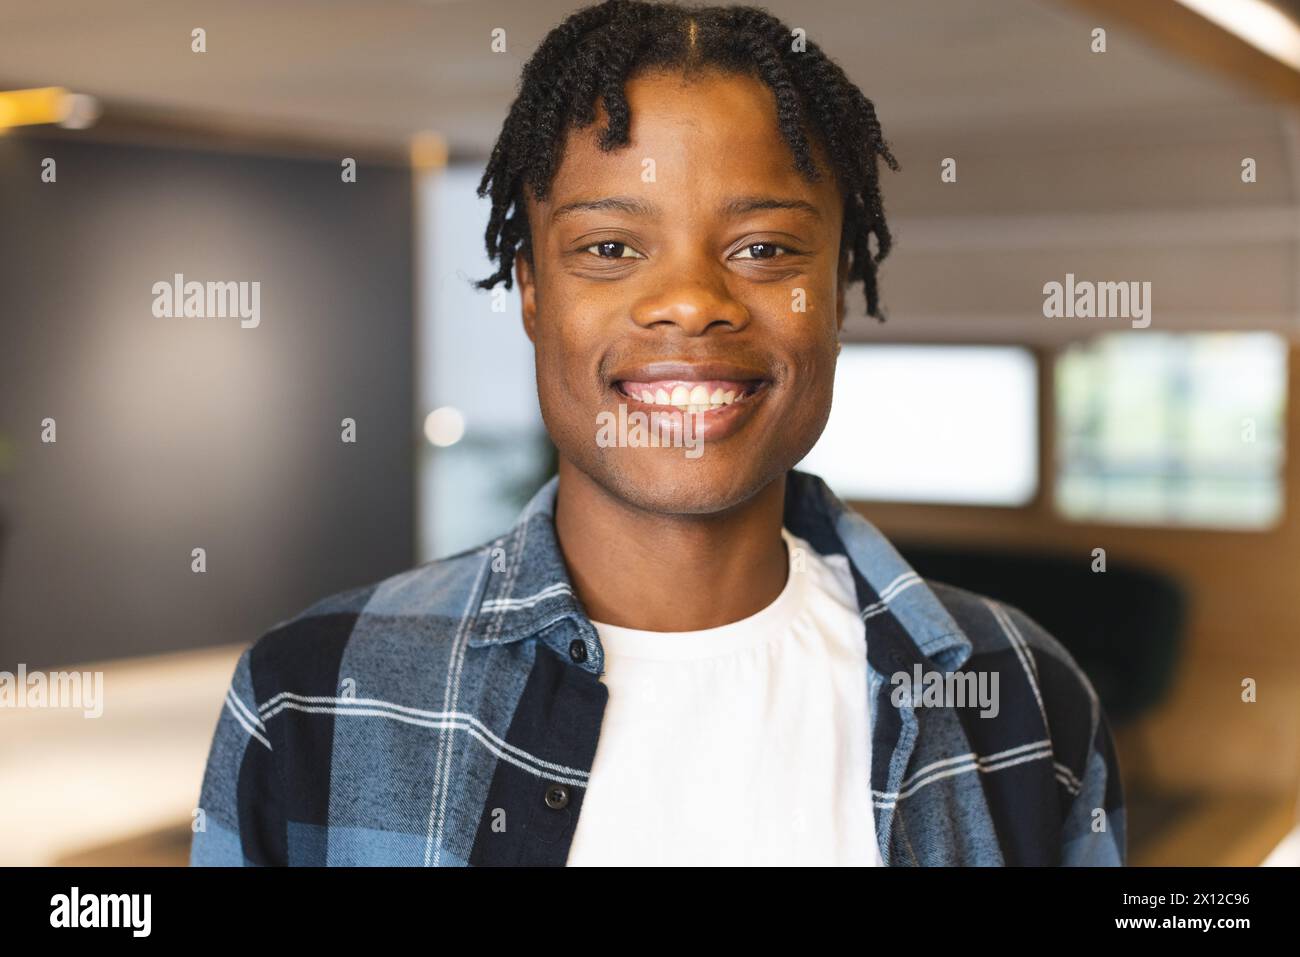 Uomo afroamericano in piedi, con una camicia a quadri, sorridendo davanti alla macchina fotografica in un moderno ufficio aziendale Foto Stock